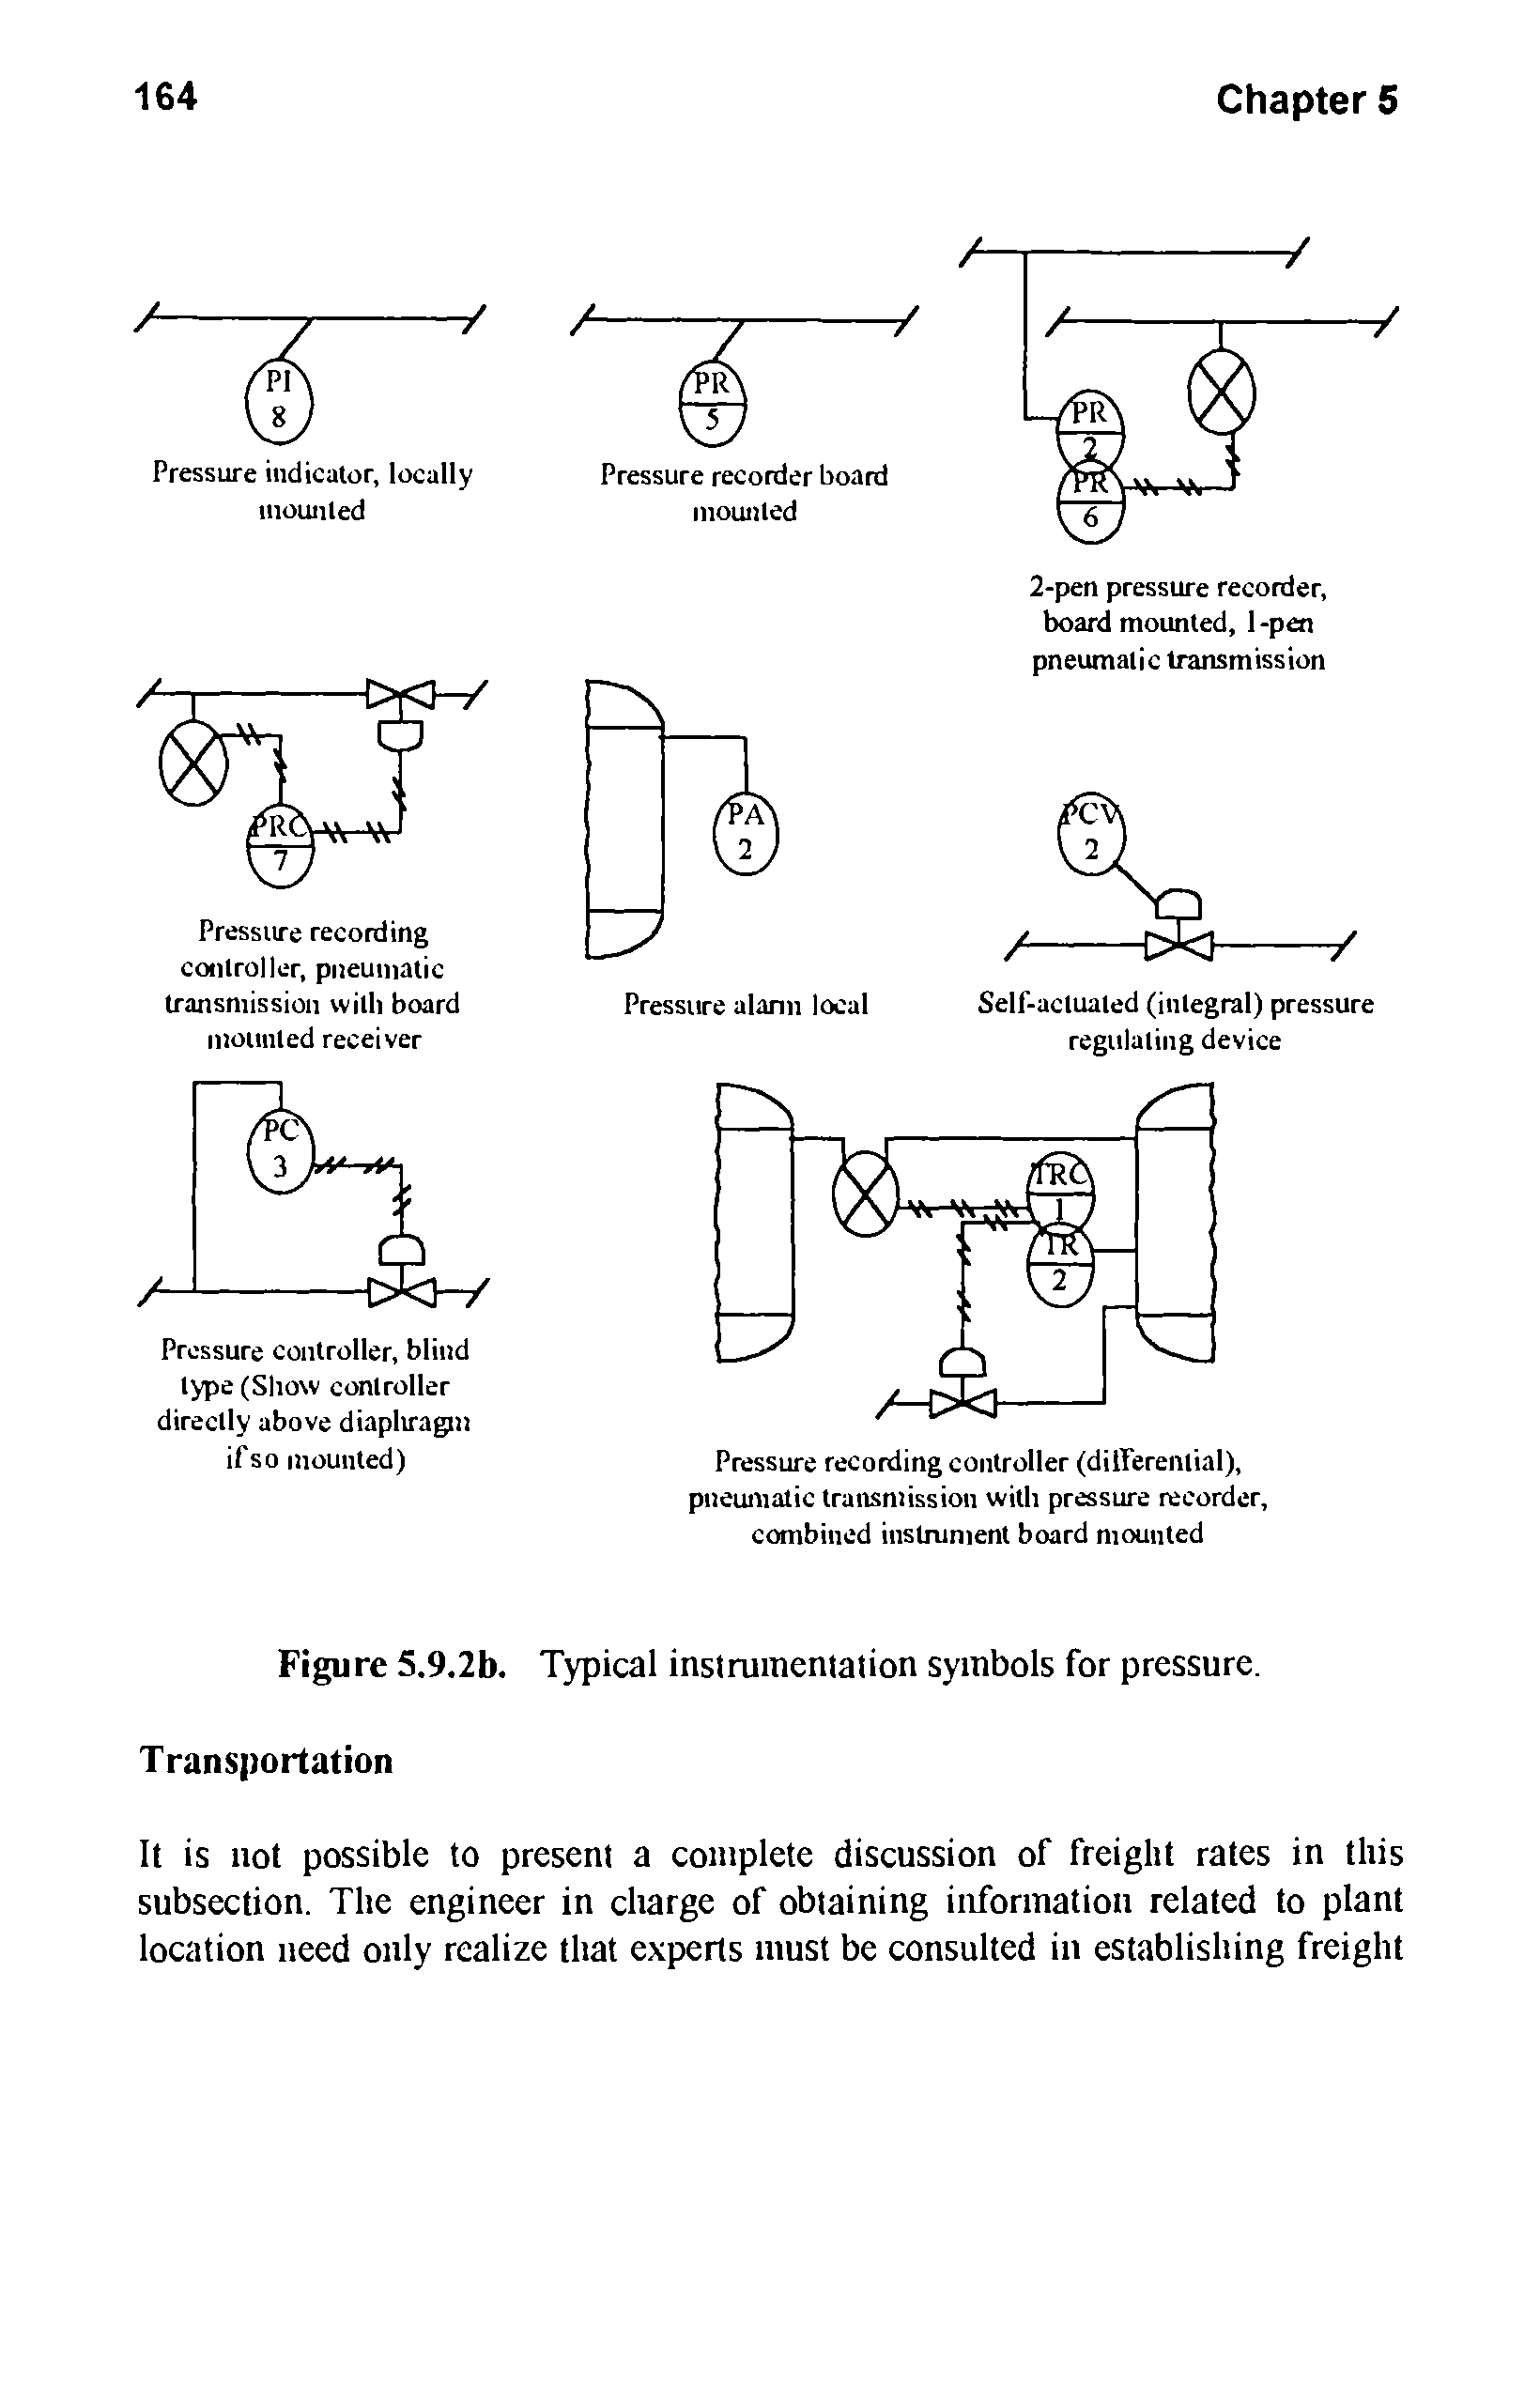 Figure 5.9.2b. Typical instrumentation symbols for pressure. Transportation...